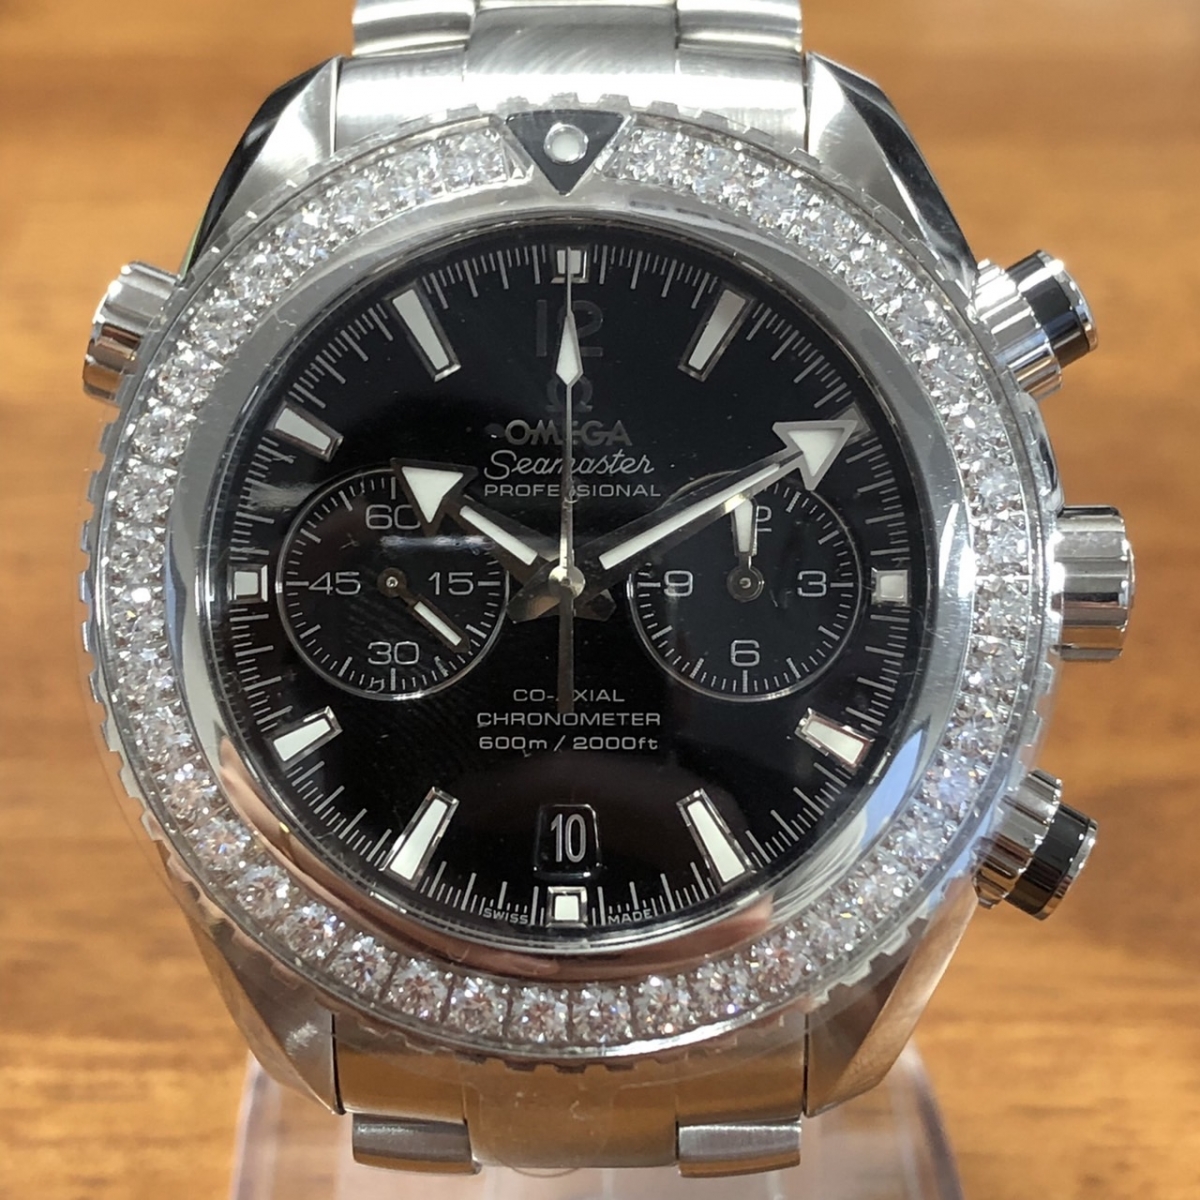 オメガの232.15.46.51.01.001 シーマスタープラネットオーシャン600﻿M クロノグラフ ダイヤベゼル 腕時計の買取実績です。